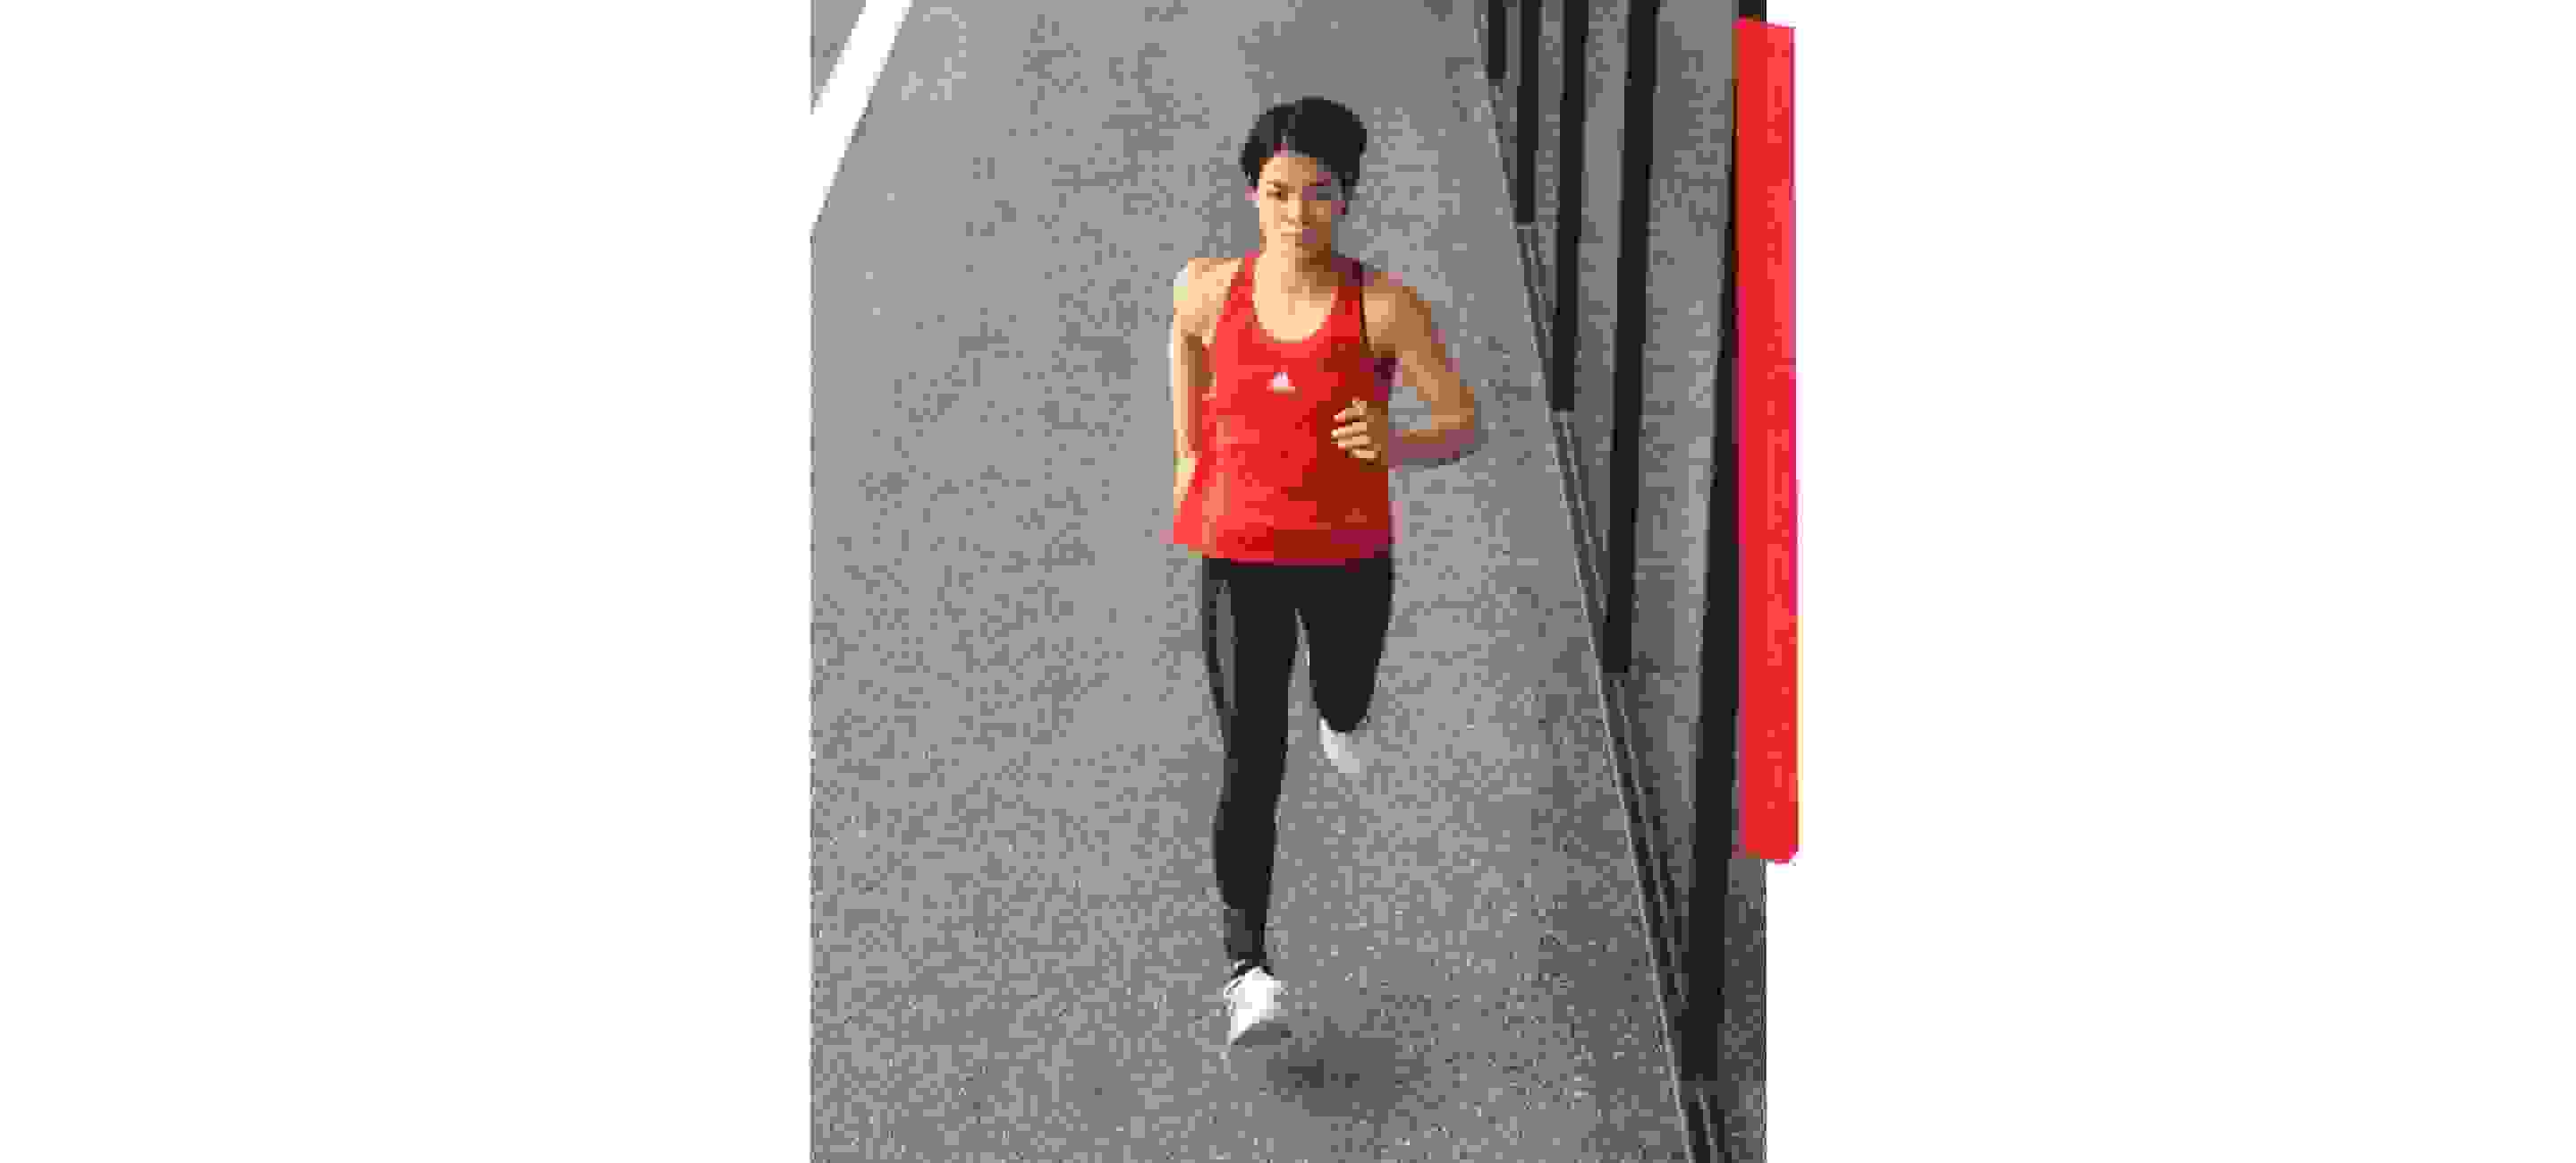 An image showing Uta Abe running